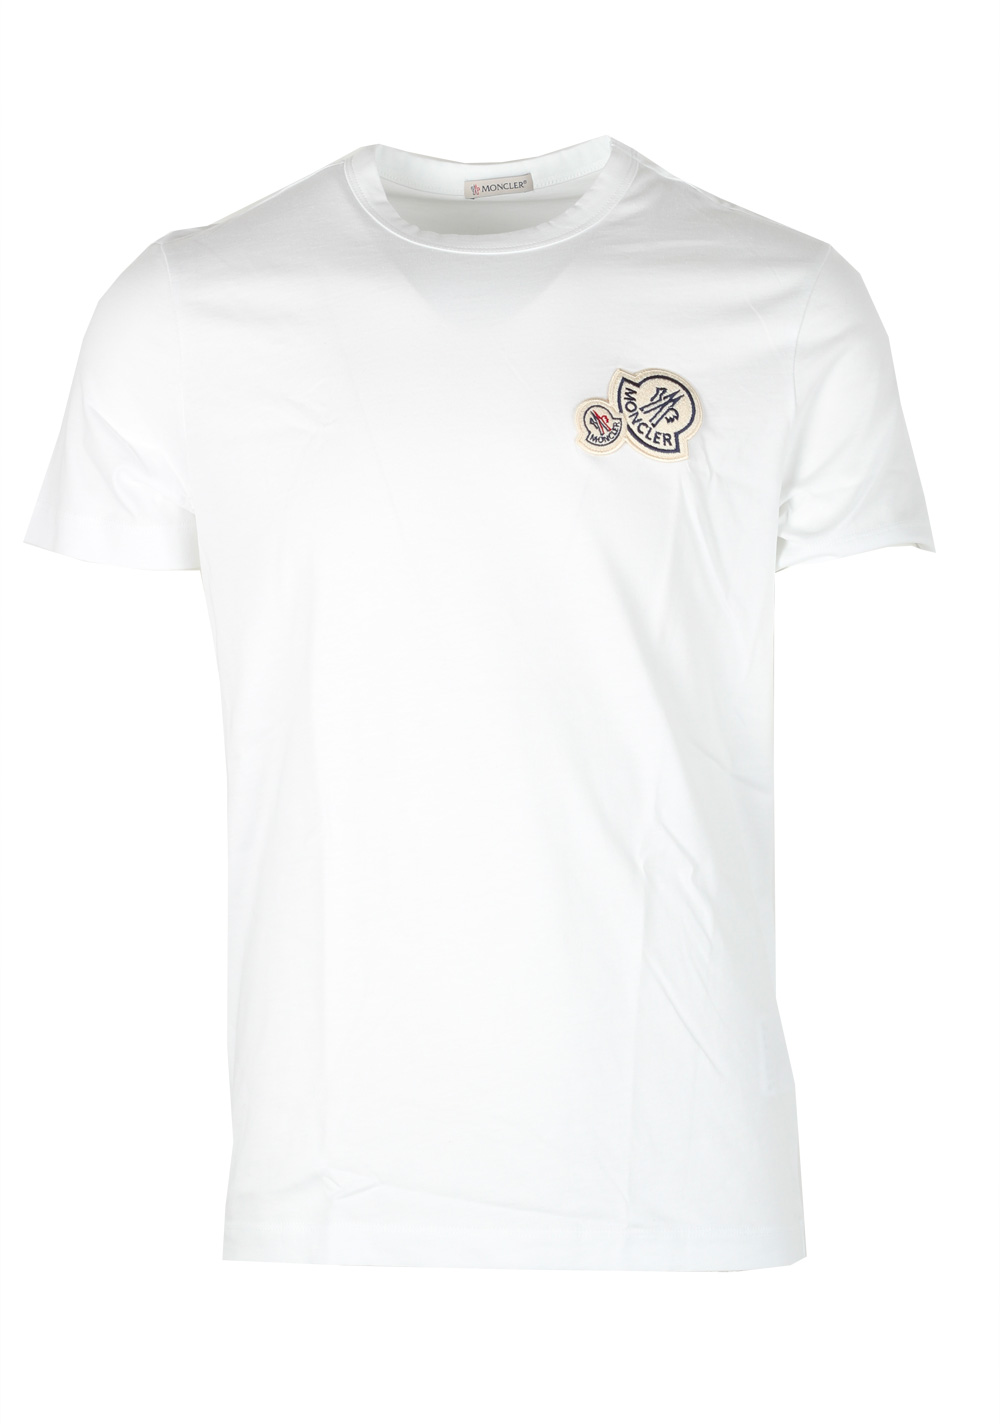 Moncler White Brand Patch Crew Neck Tee Shirt Size L / 40R U.S. | Costume Limité